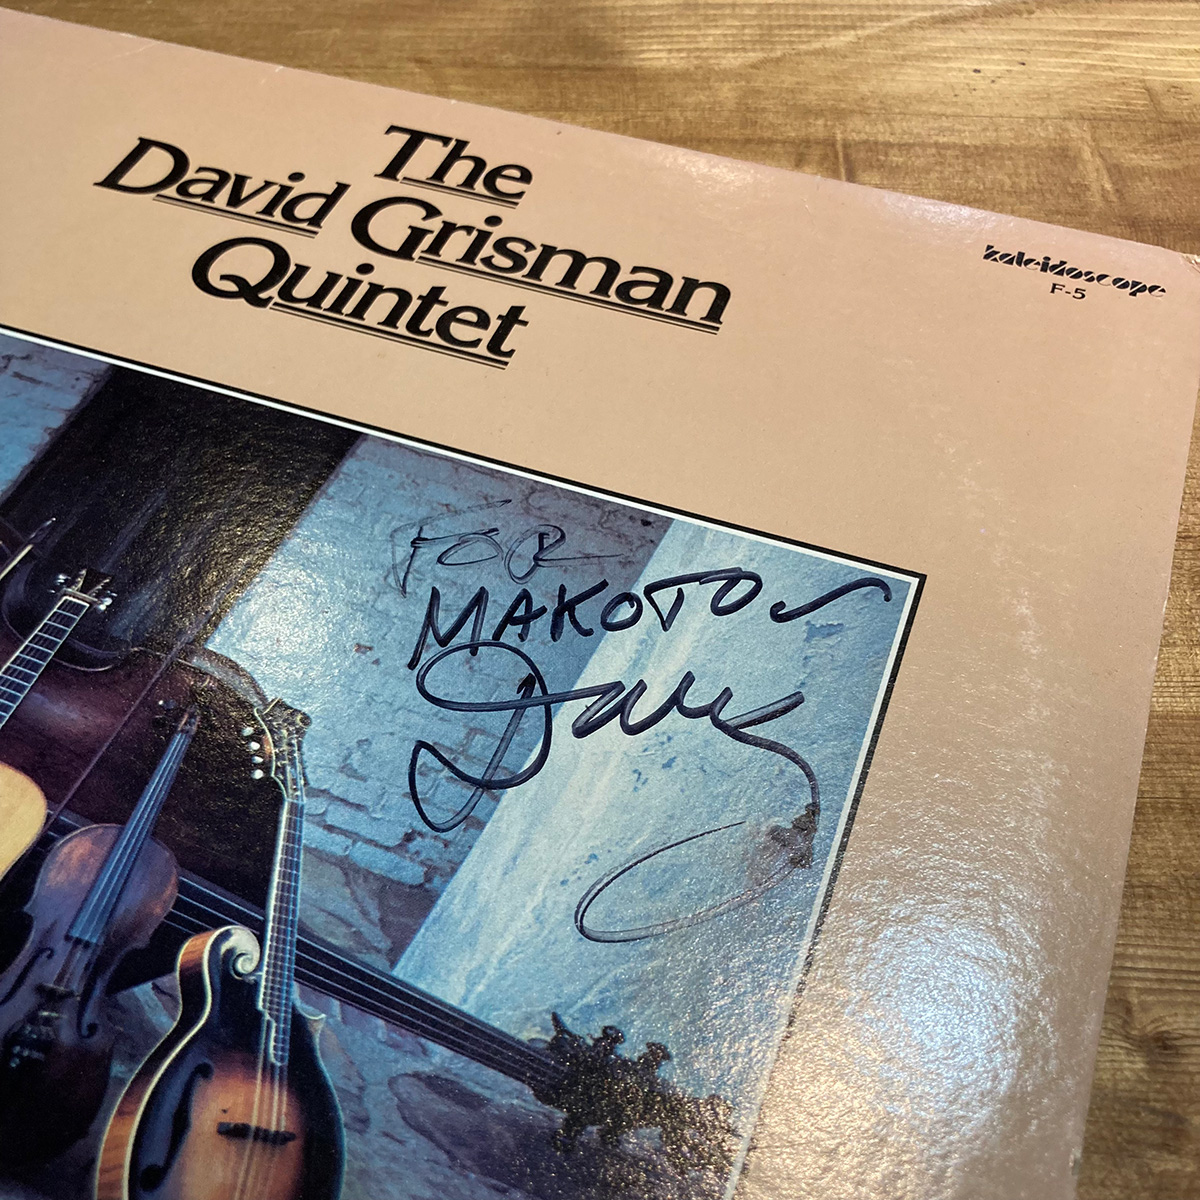 カッコ良いマンドリンが聴けるアルバム【第5回】デヴィッド・グリスマン・クインテット『David Grisman Quintet』 |  アコースティック・ギター・マガジンWEB